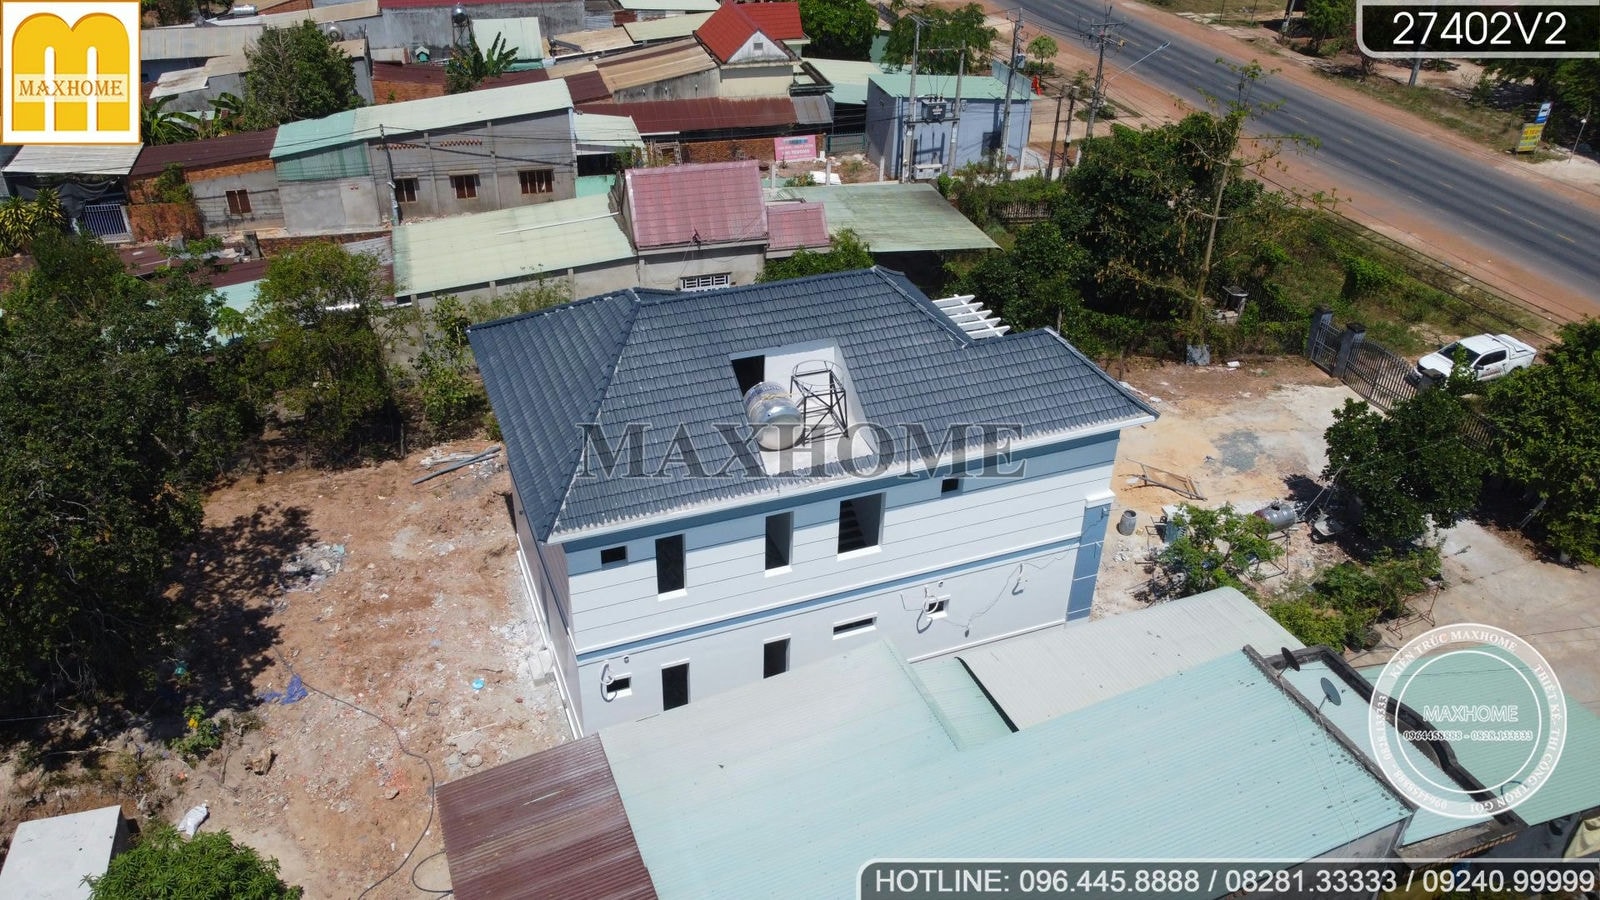 Ghé thăm tiến độ công trình nhà mái Nhật hiện đại cực hot tại Bình Phước